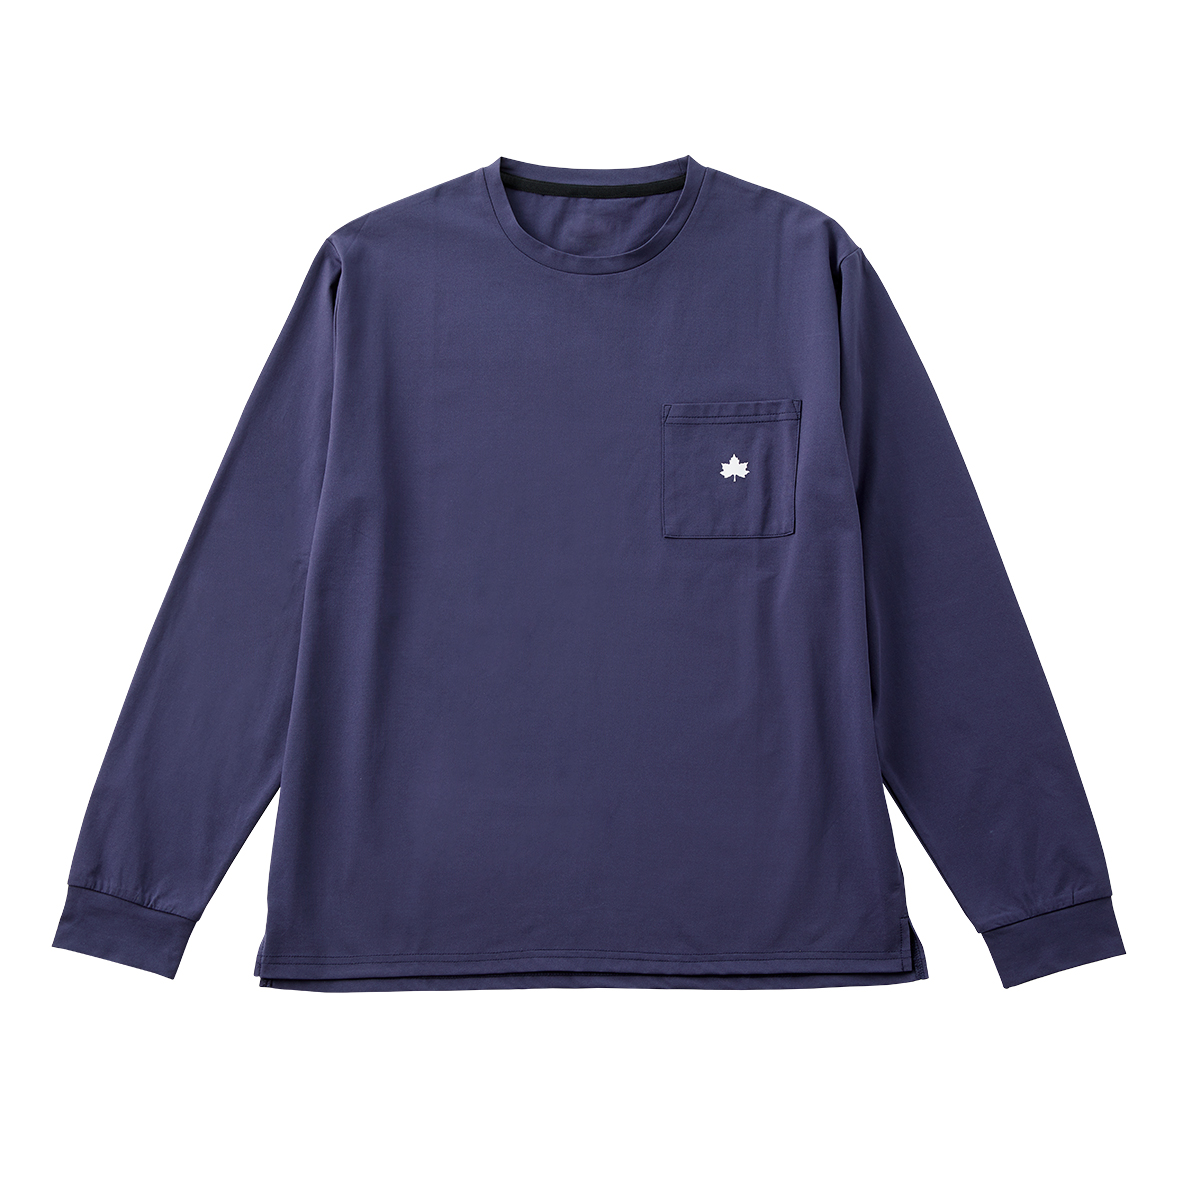 ■LOGOS by Lipner ラウンジロングTシャツ 59207（ネイビー・L）